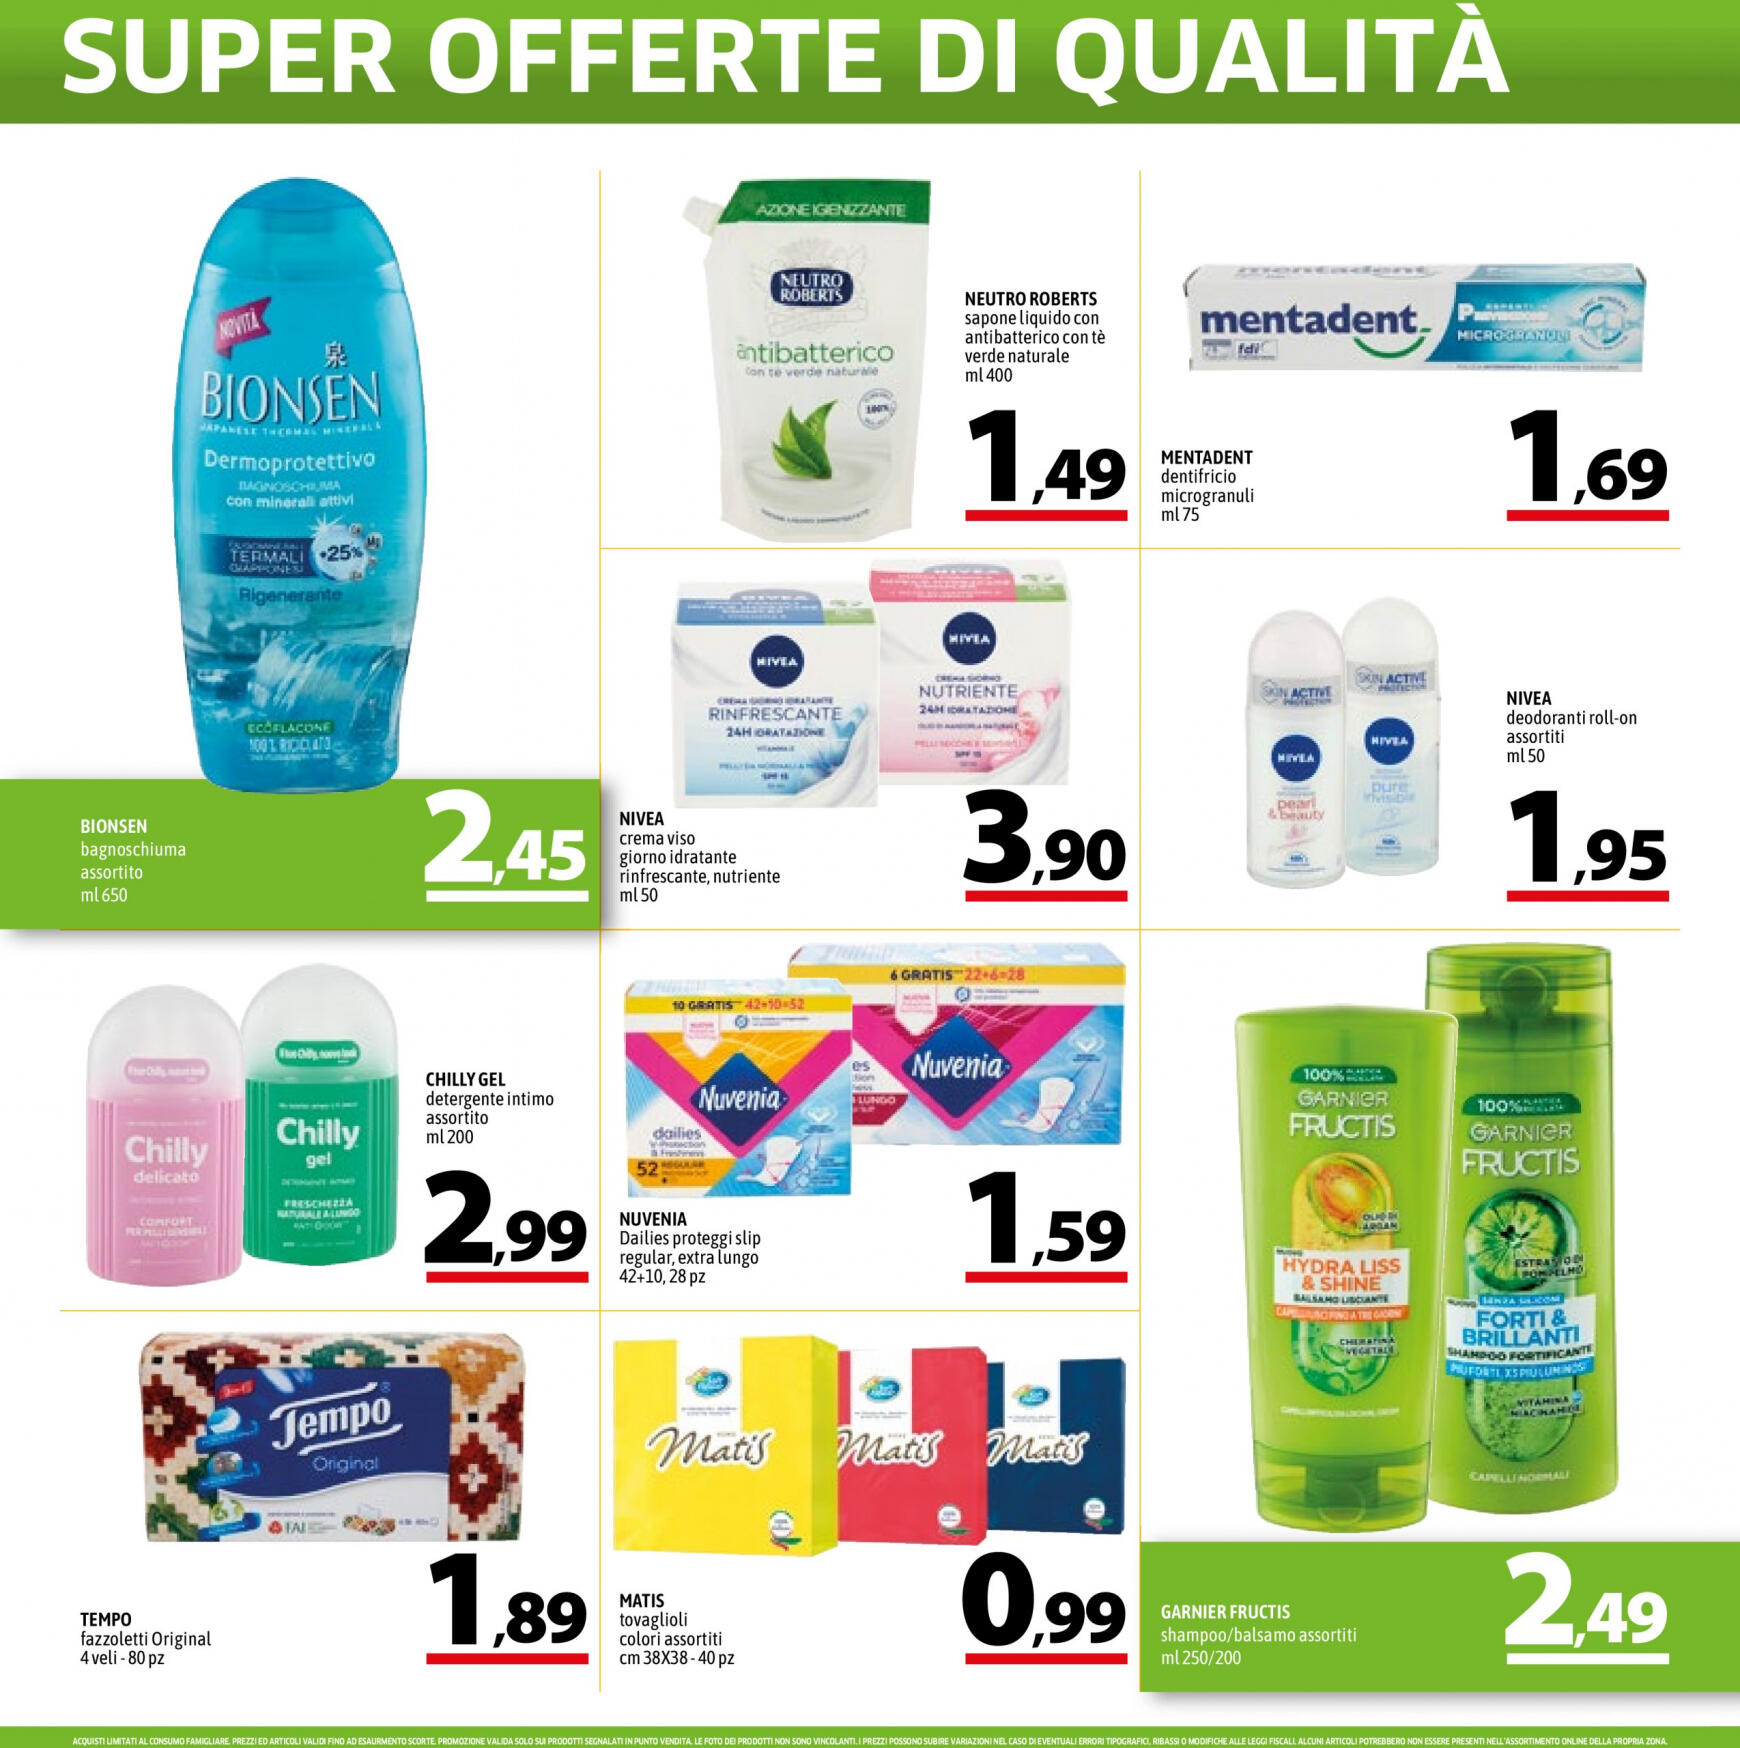 a-o - Nuovo volantino A&O - Super Offerte Di Qualita' 02.05. - 15.05. - page: 14